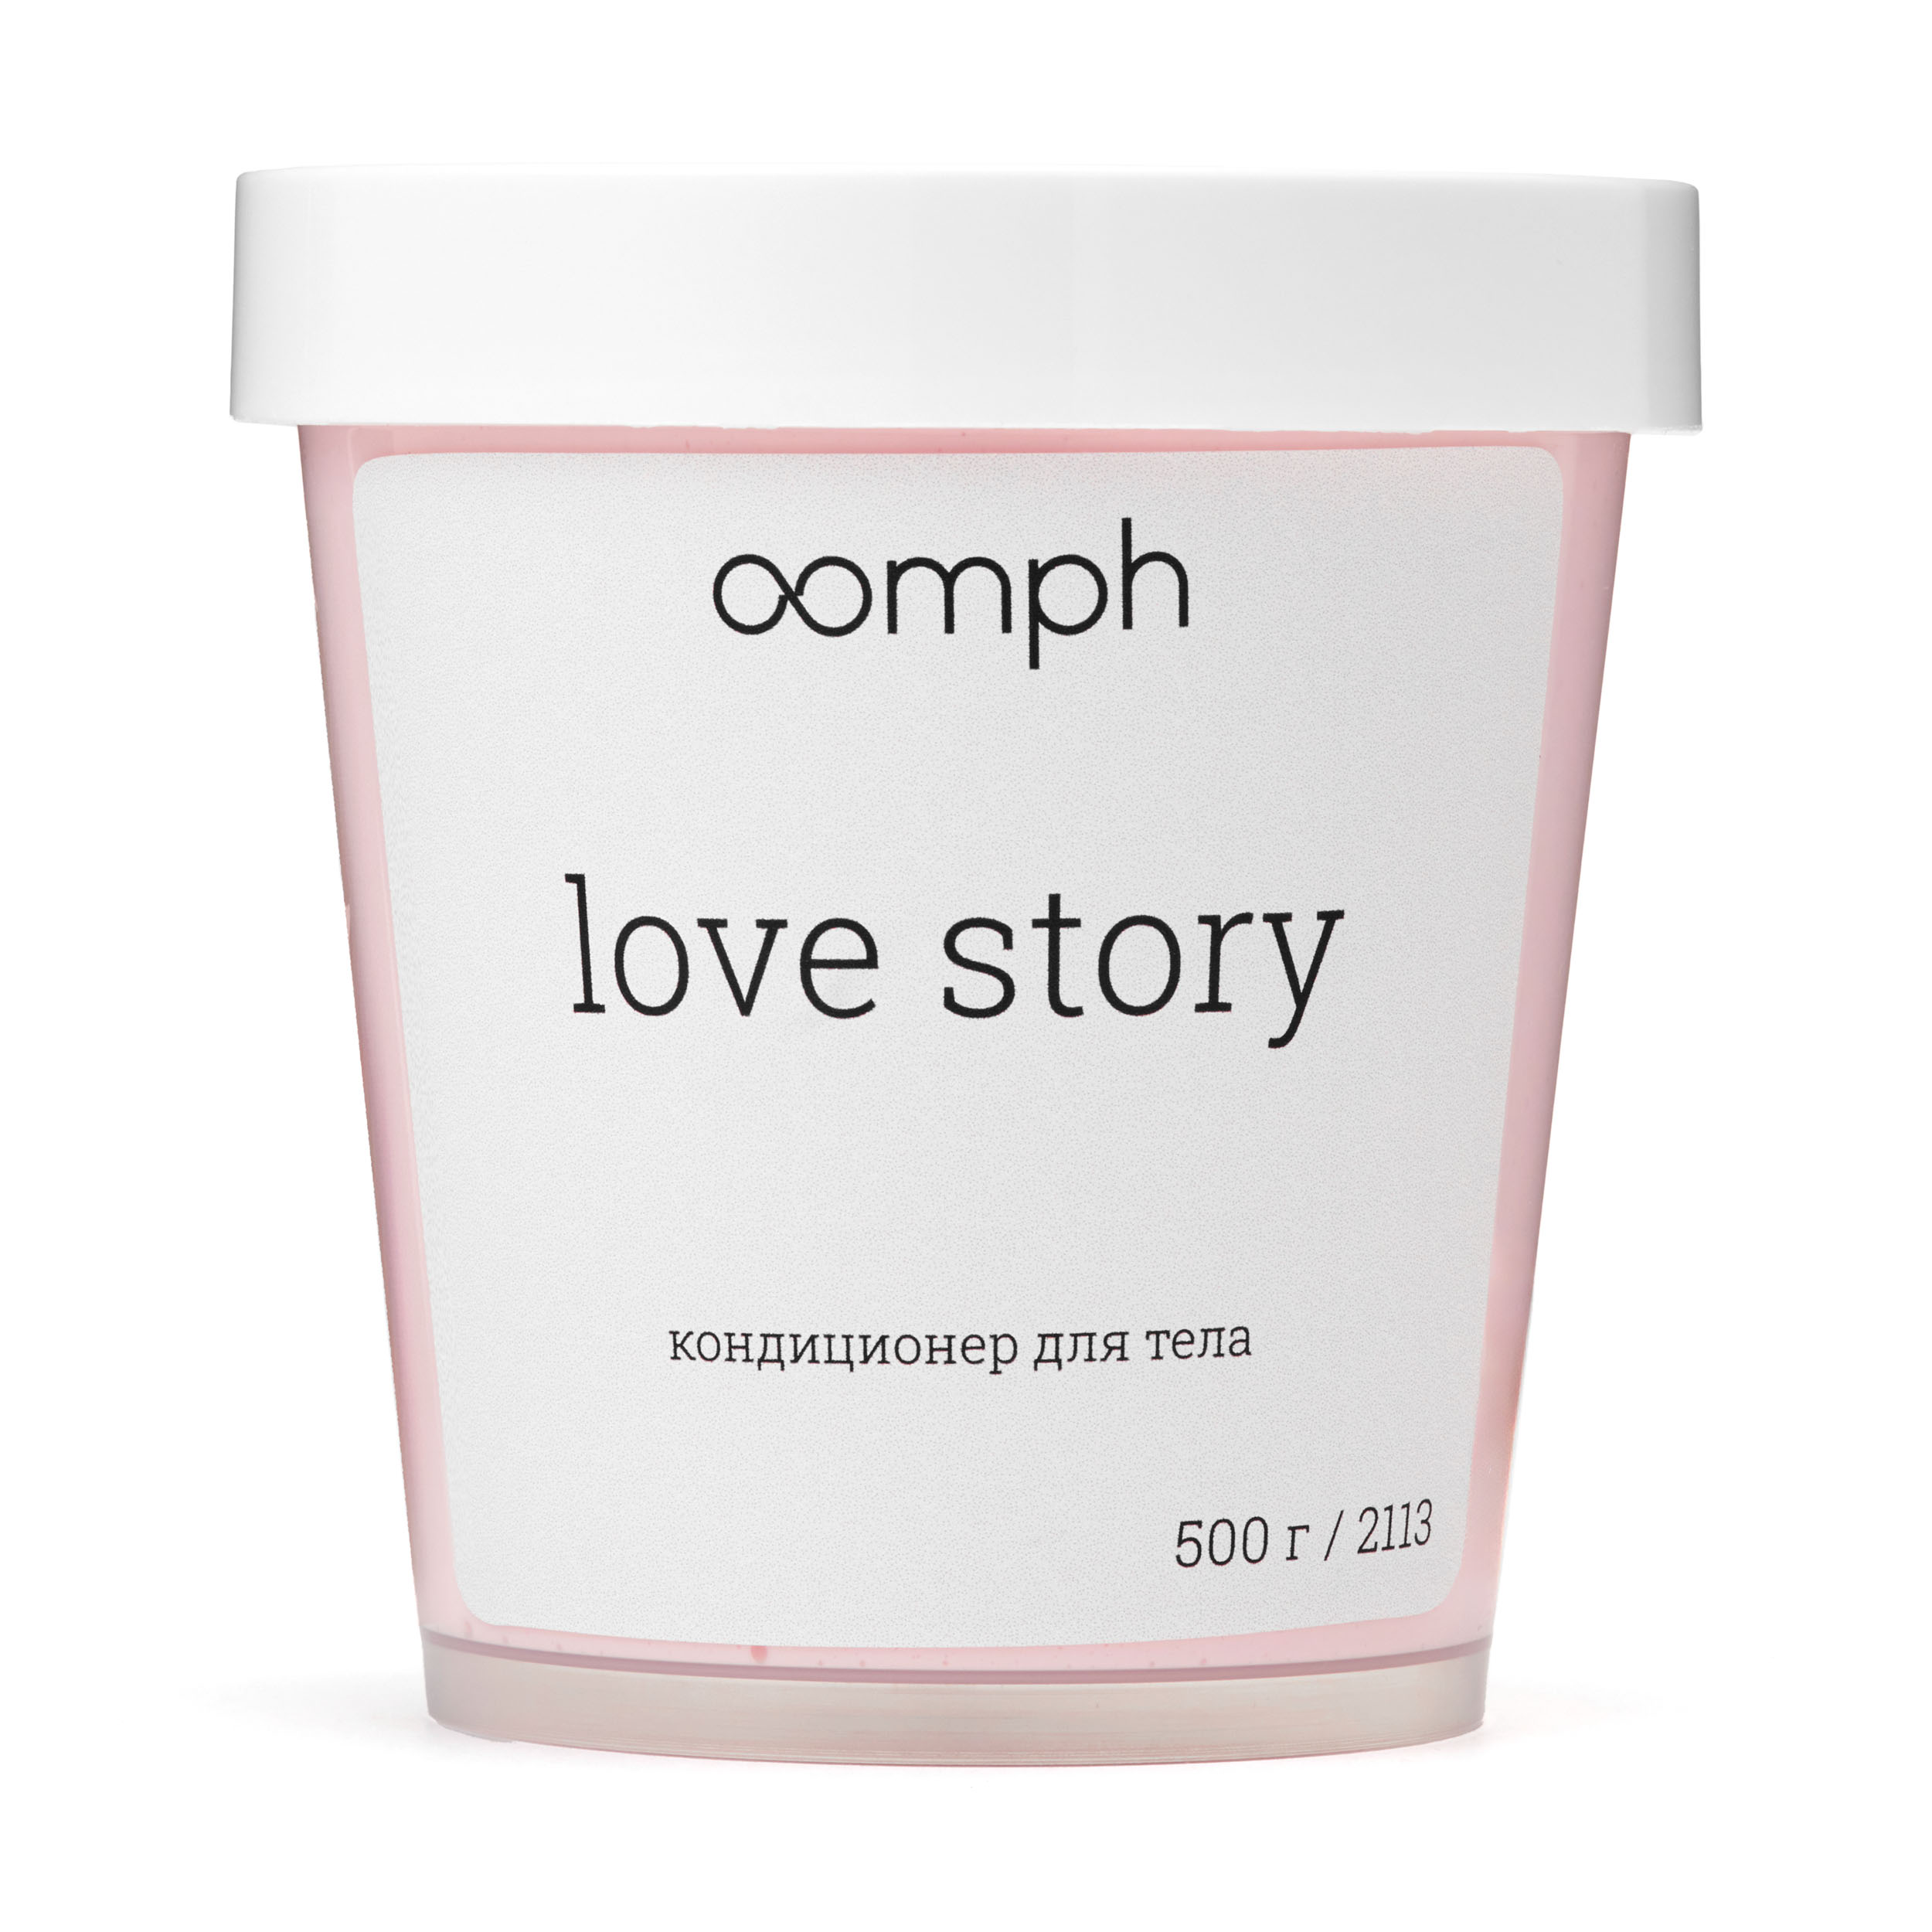 Кондиционер для тела OOMPH Love story 500г ромео и джульетта гамлет